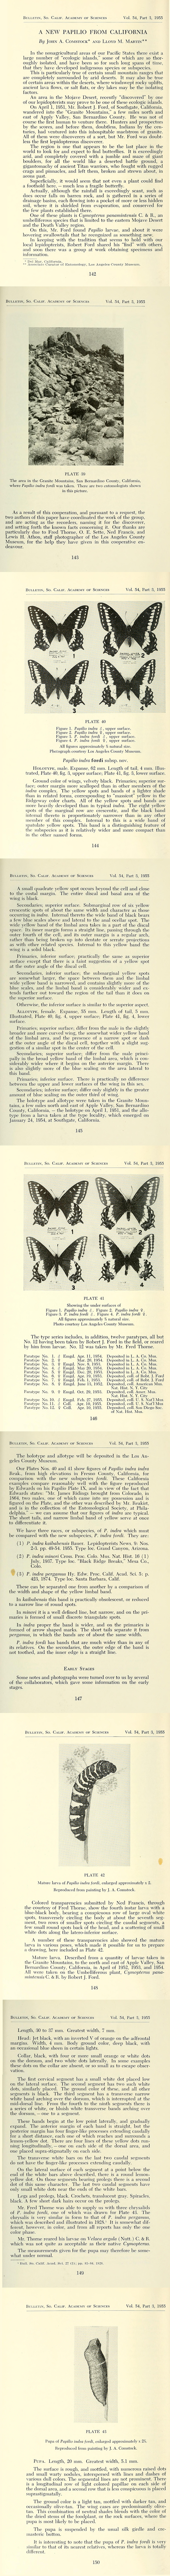 Original description of Papilio indra fordi